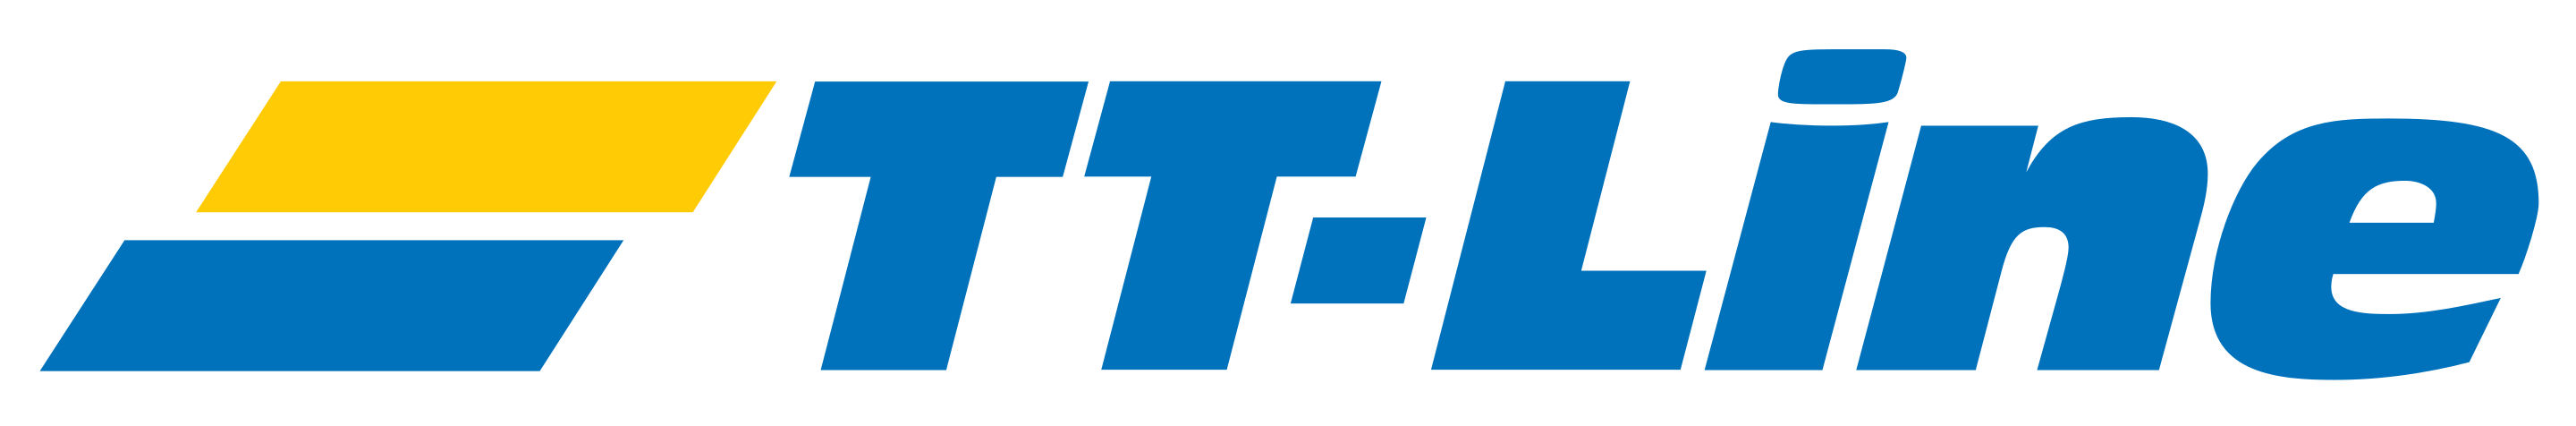 TT-Line logo